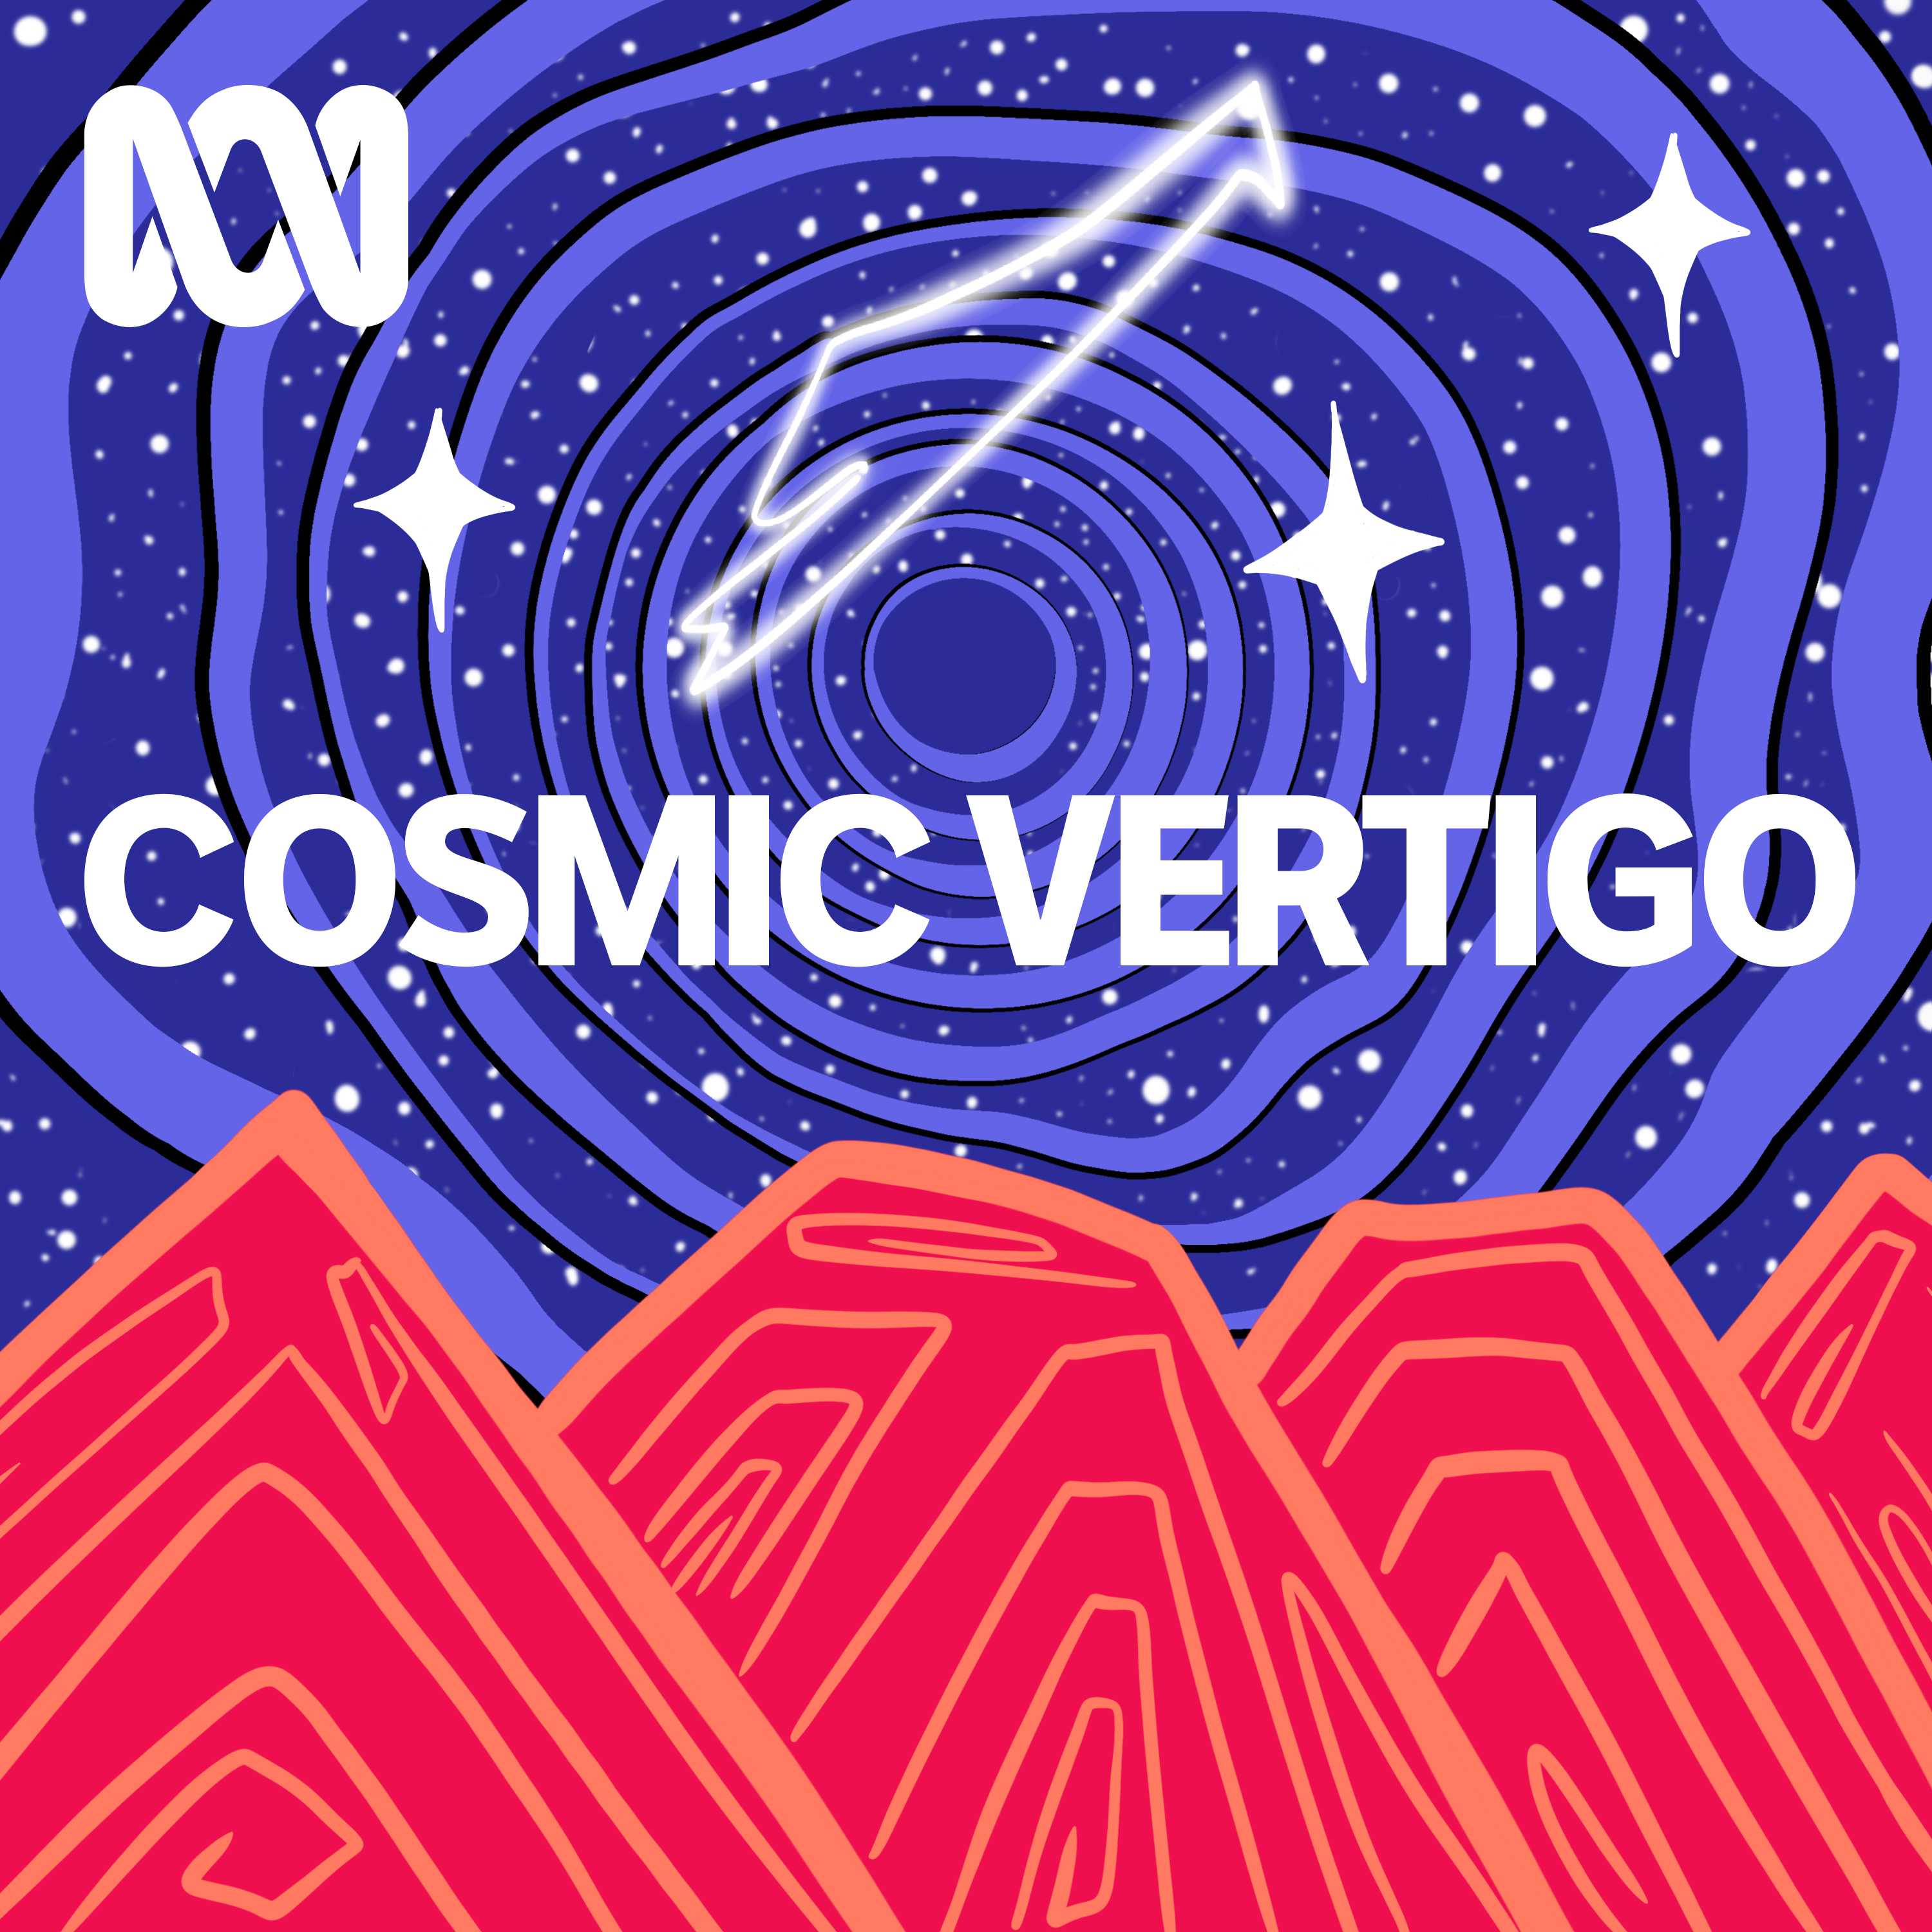 Cosmic Vertigo Image